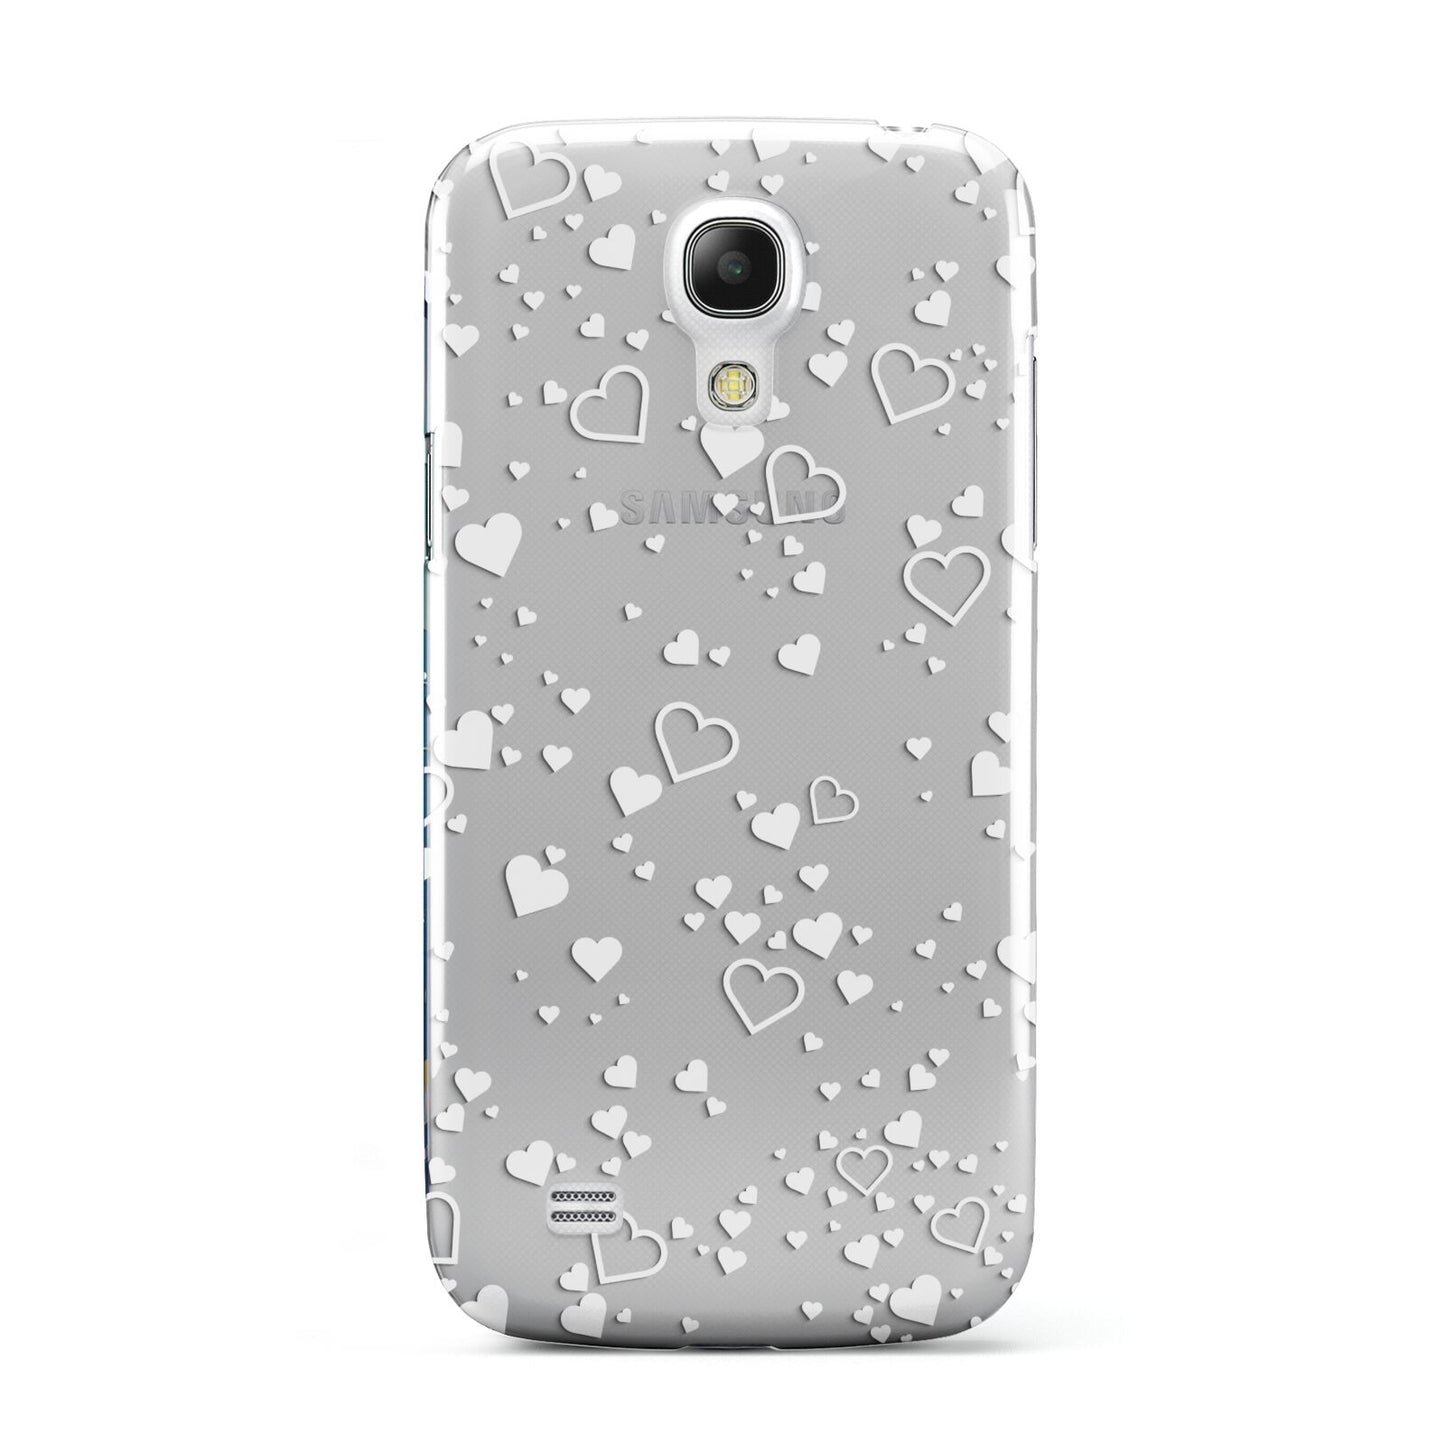 White Heart Samsung Galaxy S4 Mini Case